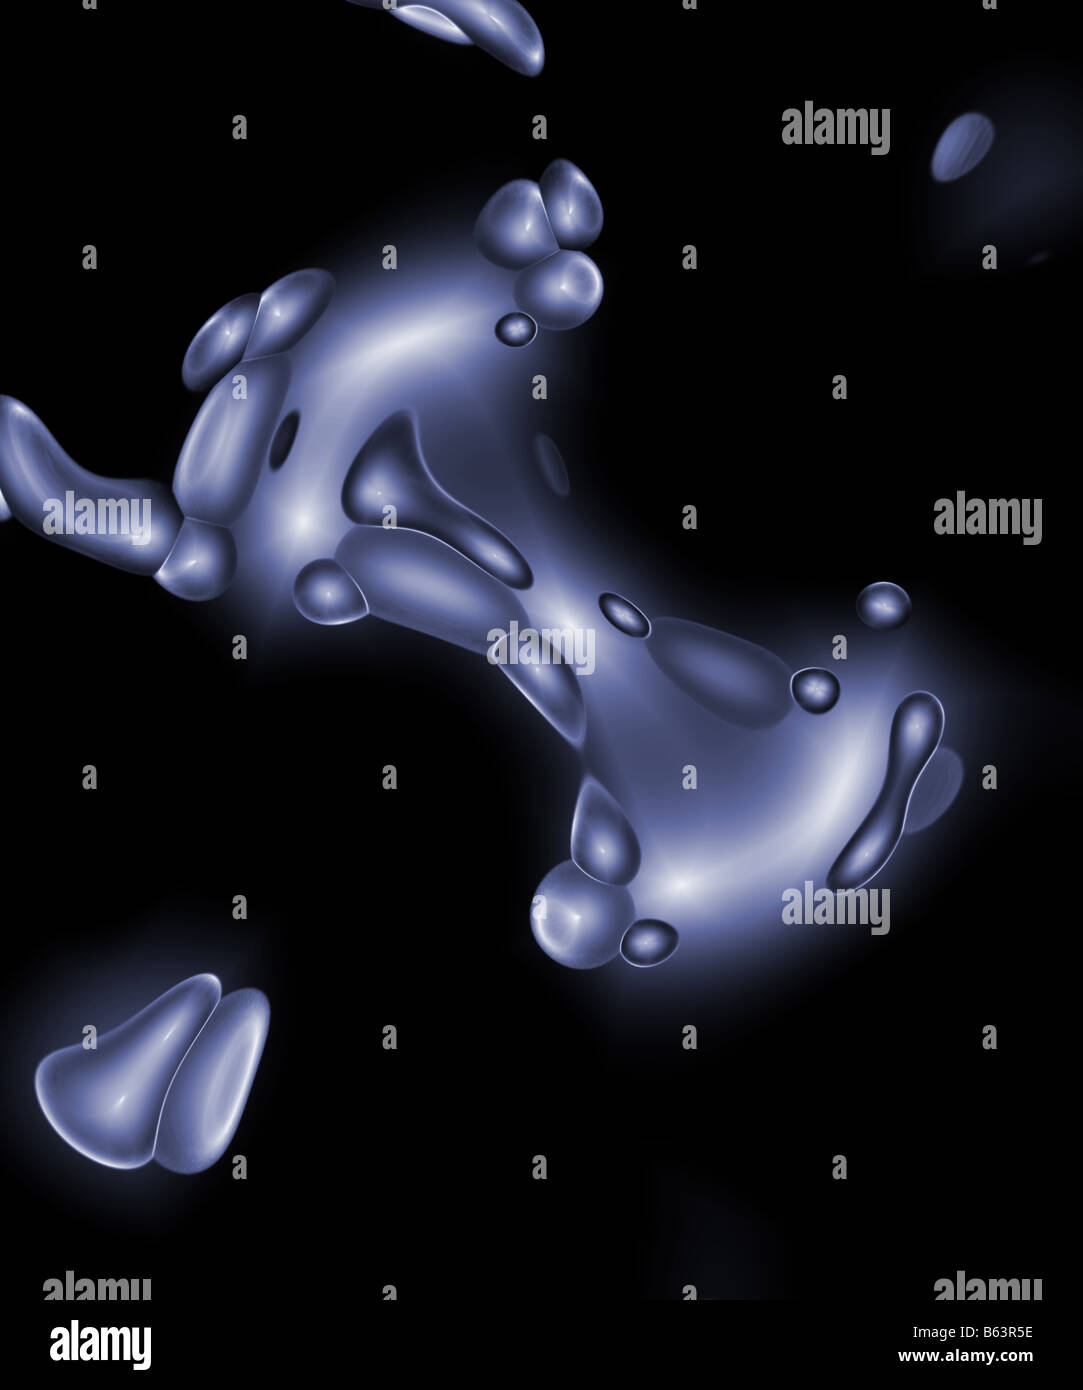 Cellular à blobs chrome ressemble à quelque chose que vous verriez dans le cadre d'un microscope Banque D'Images